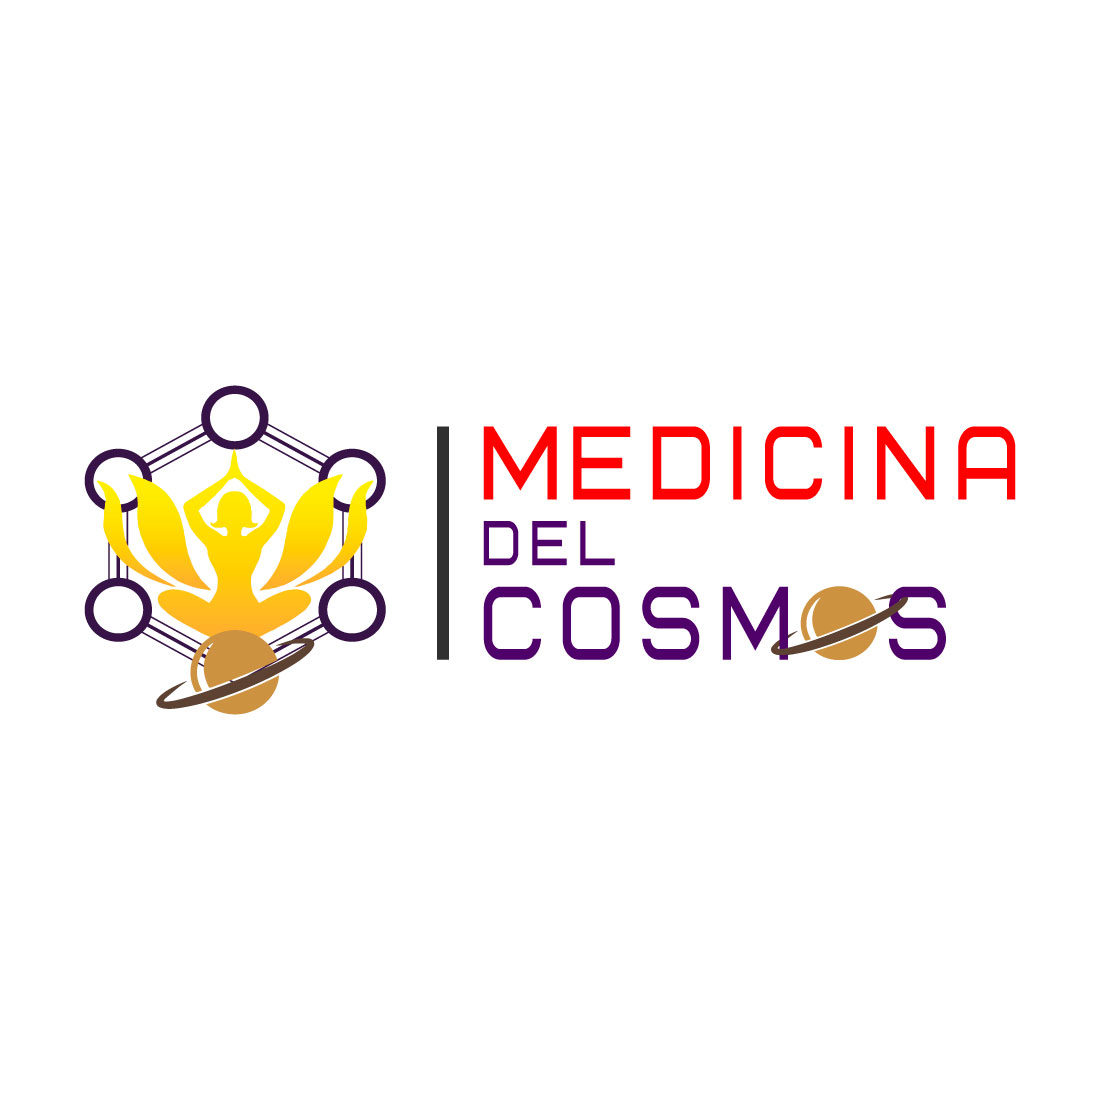 Medicina del cosmoc cover image.